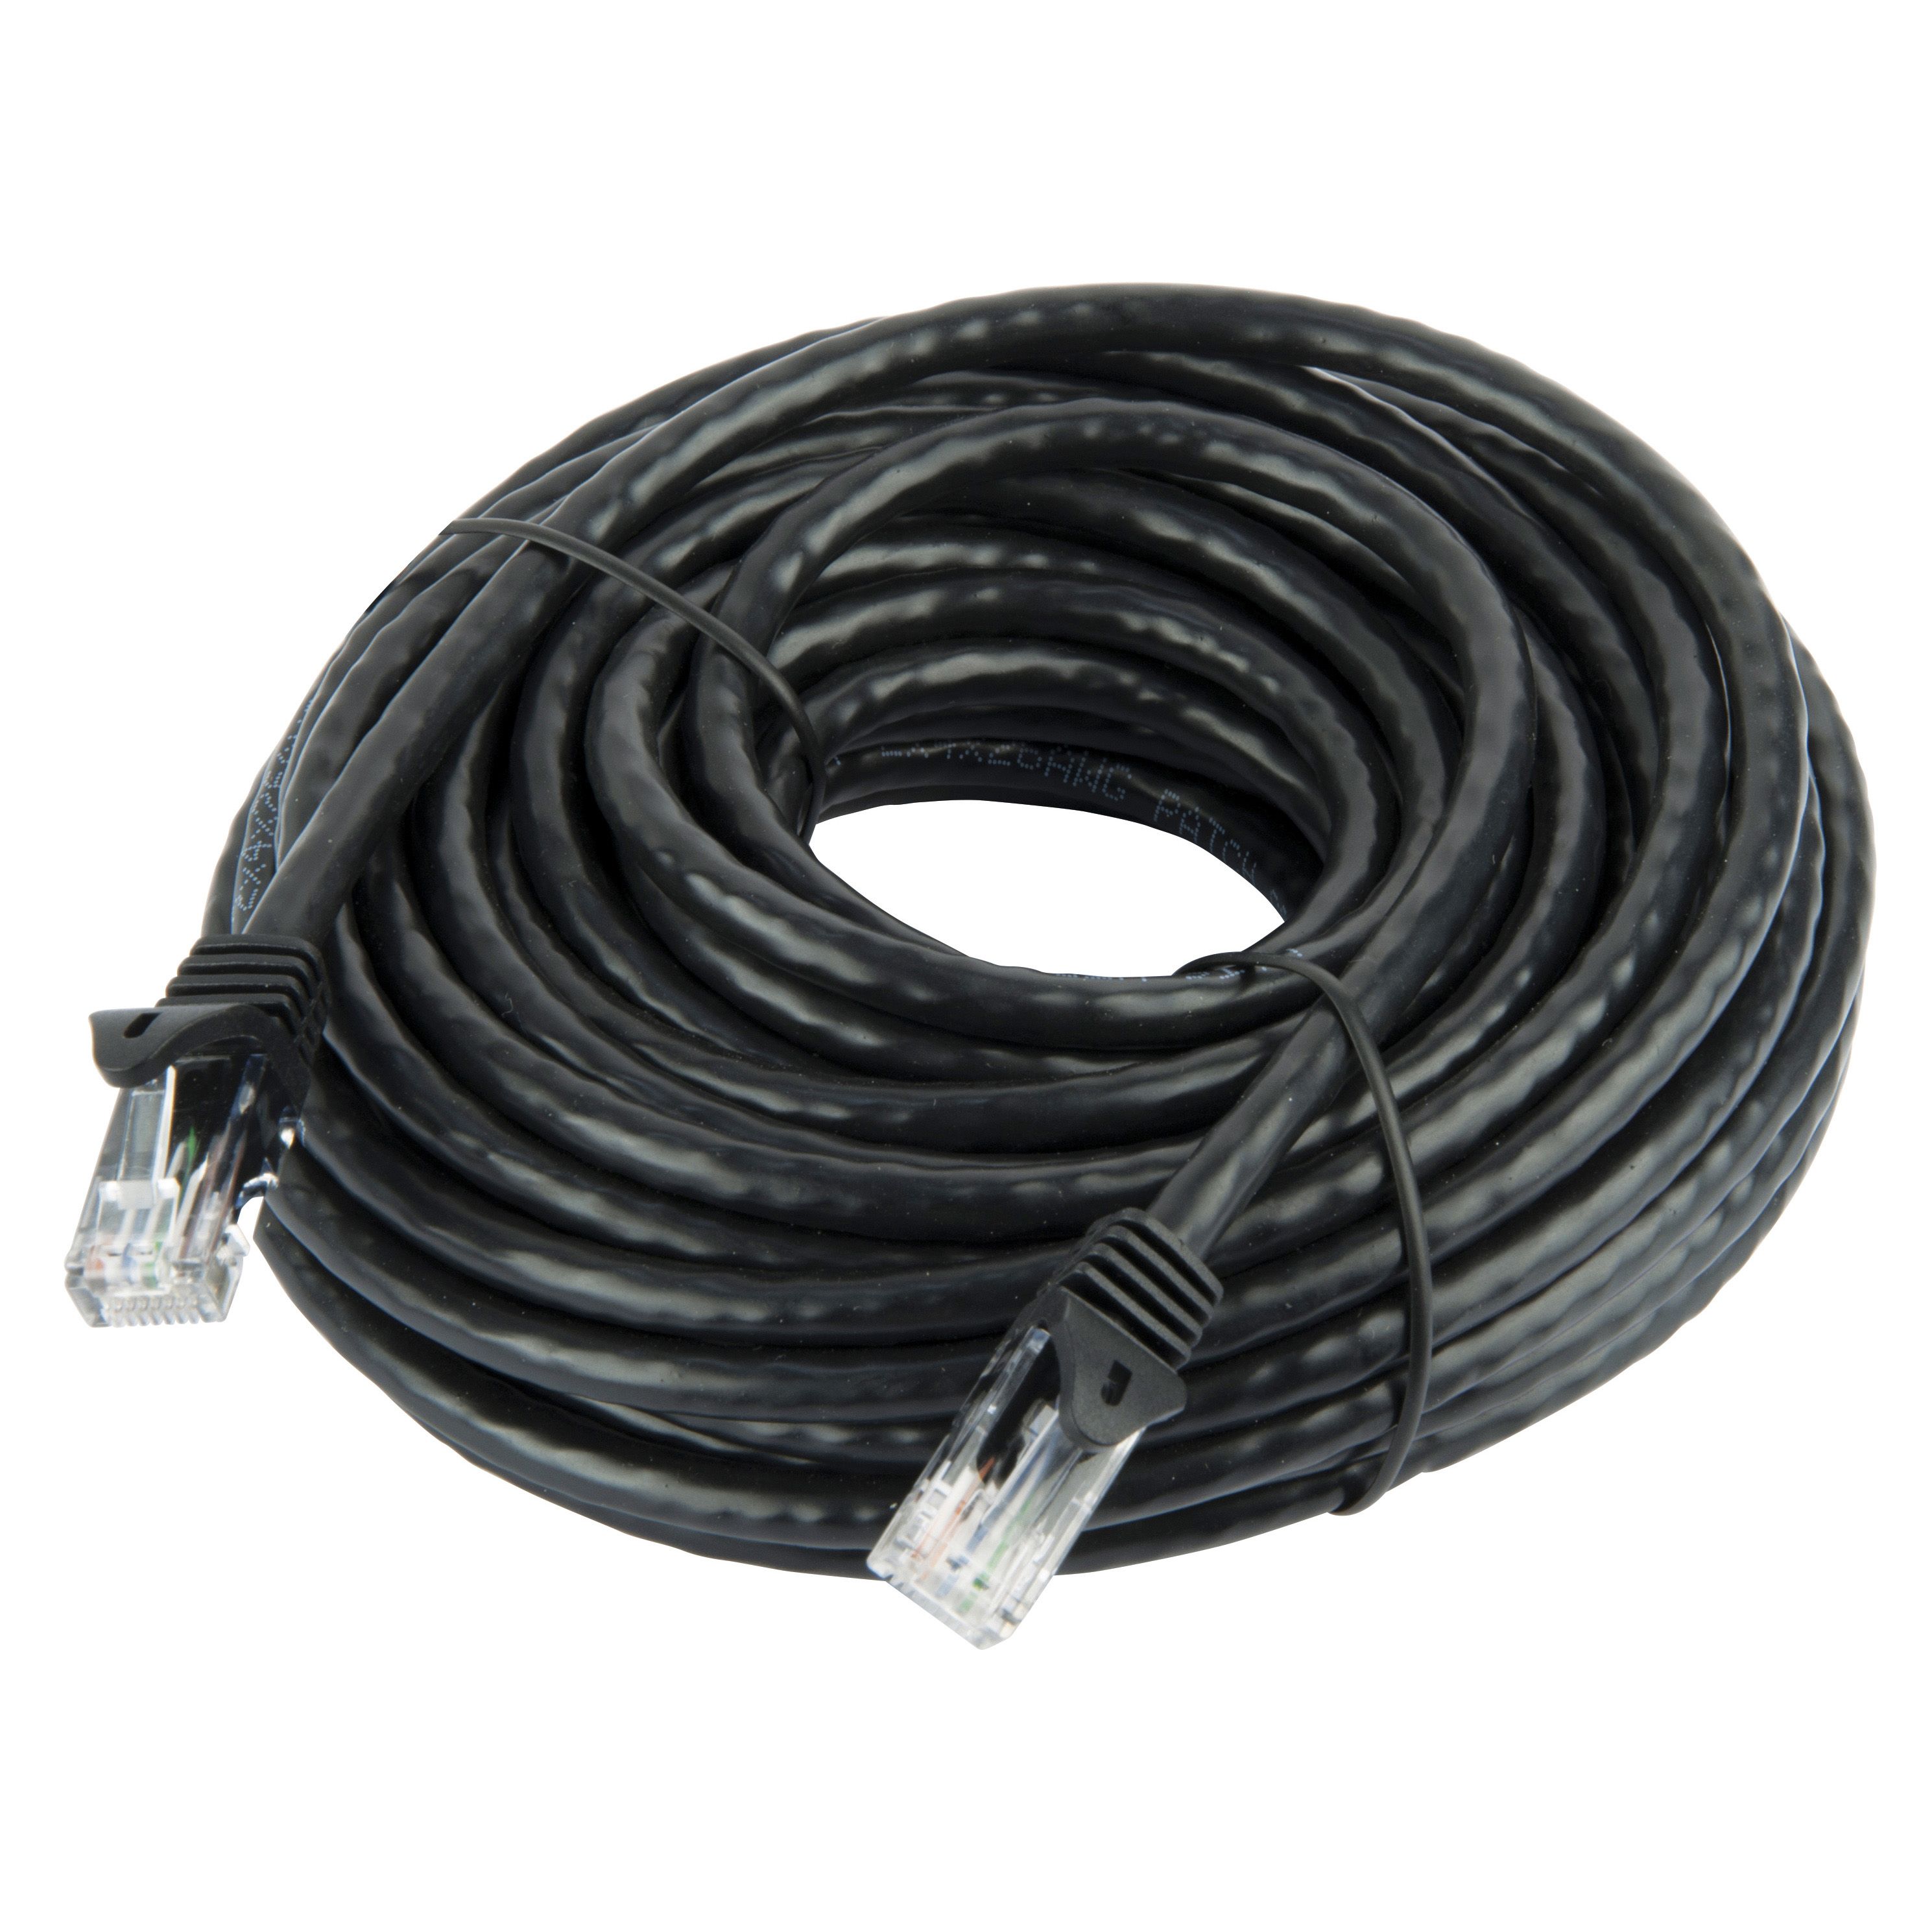 Tristar Cat 6 Black Network cable, 10m | Departments | DIY at B&Q